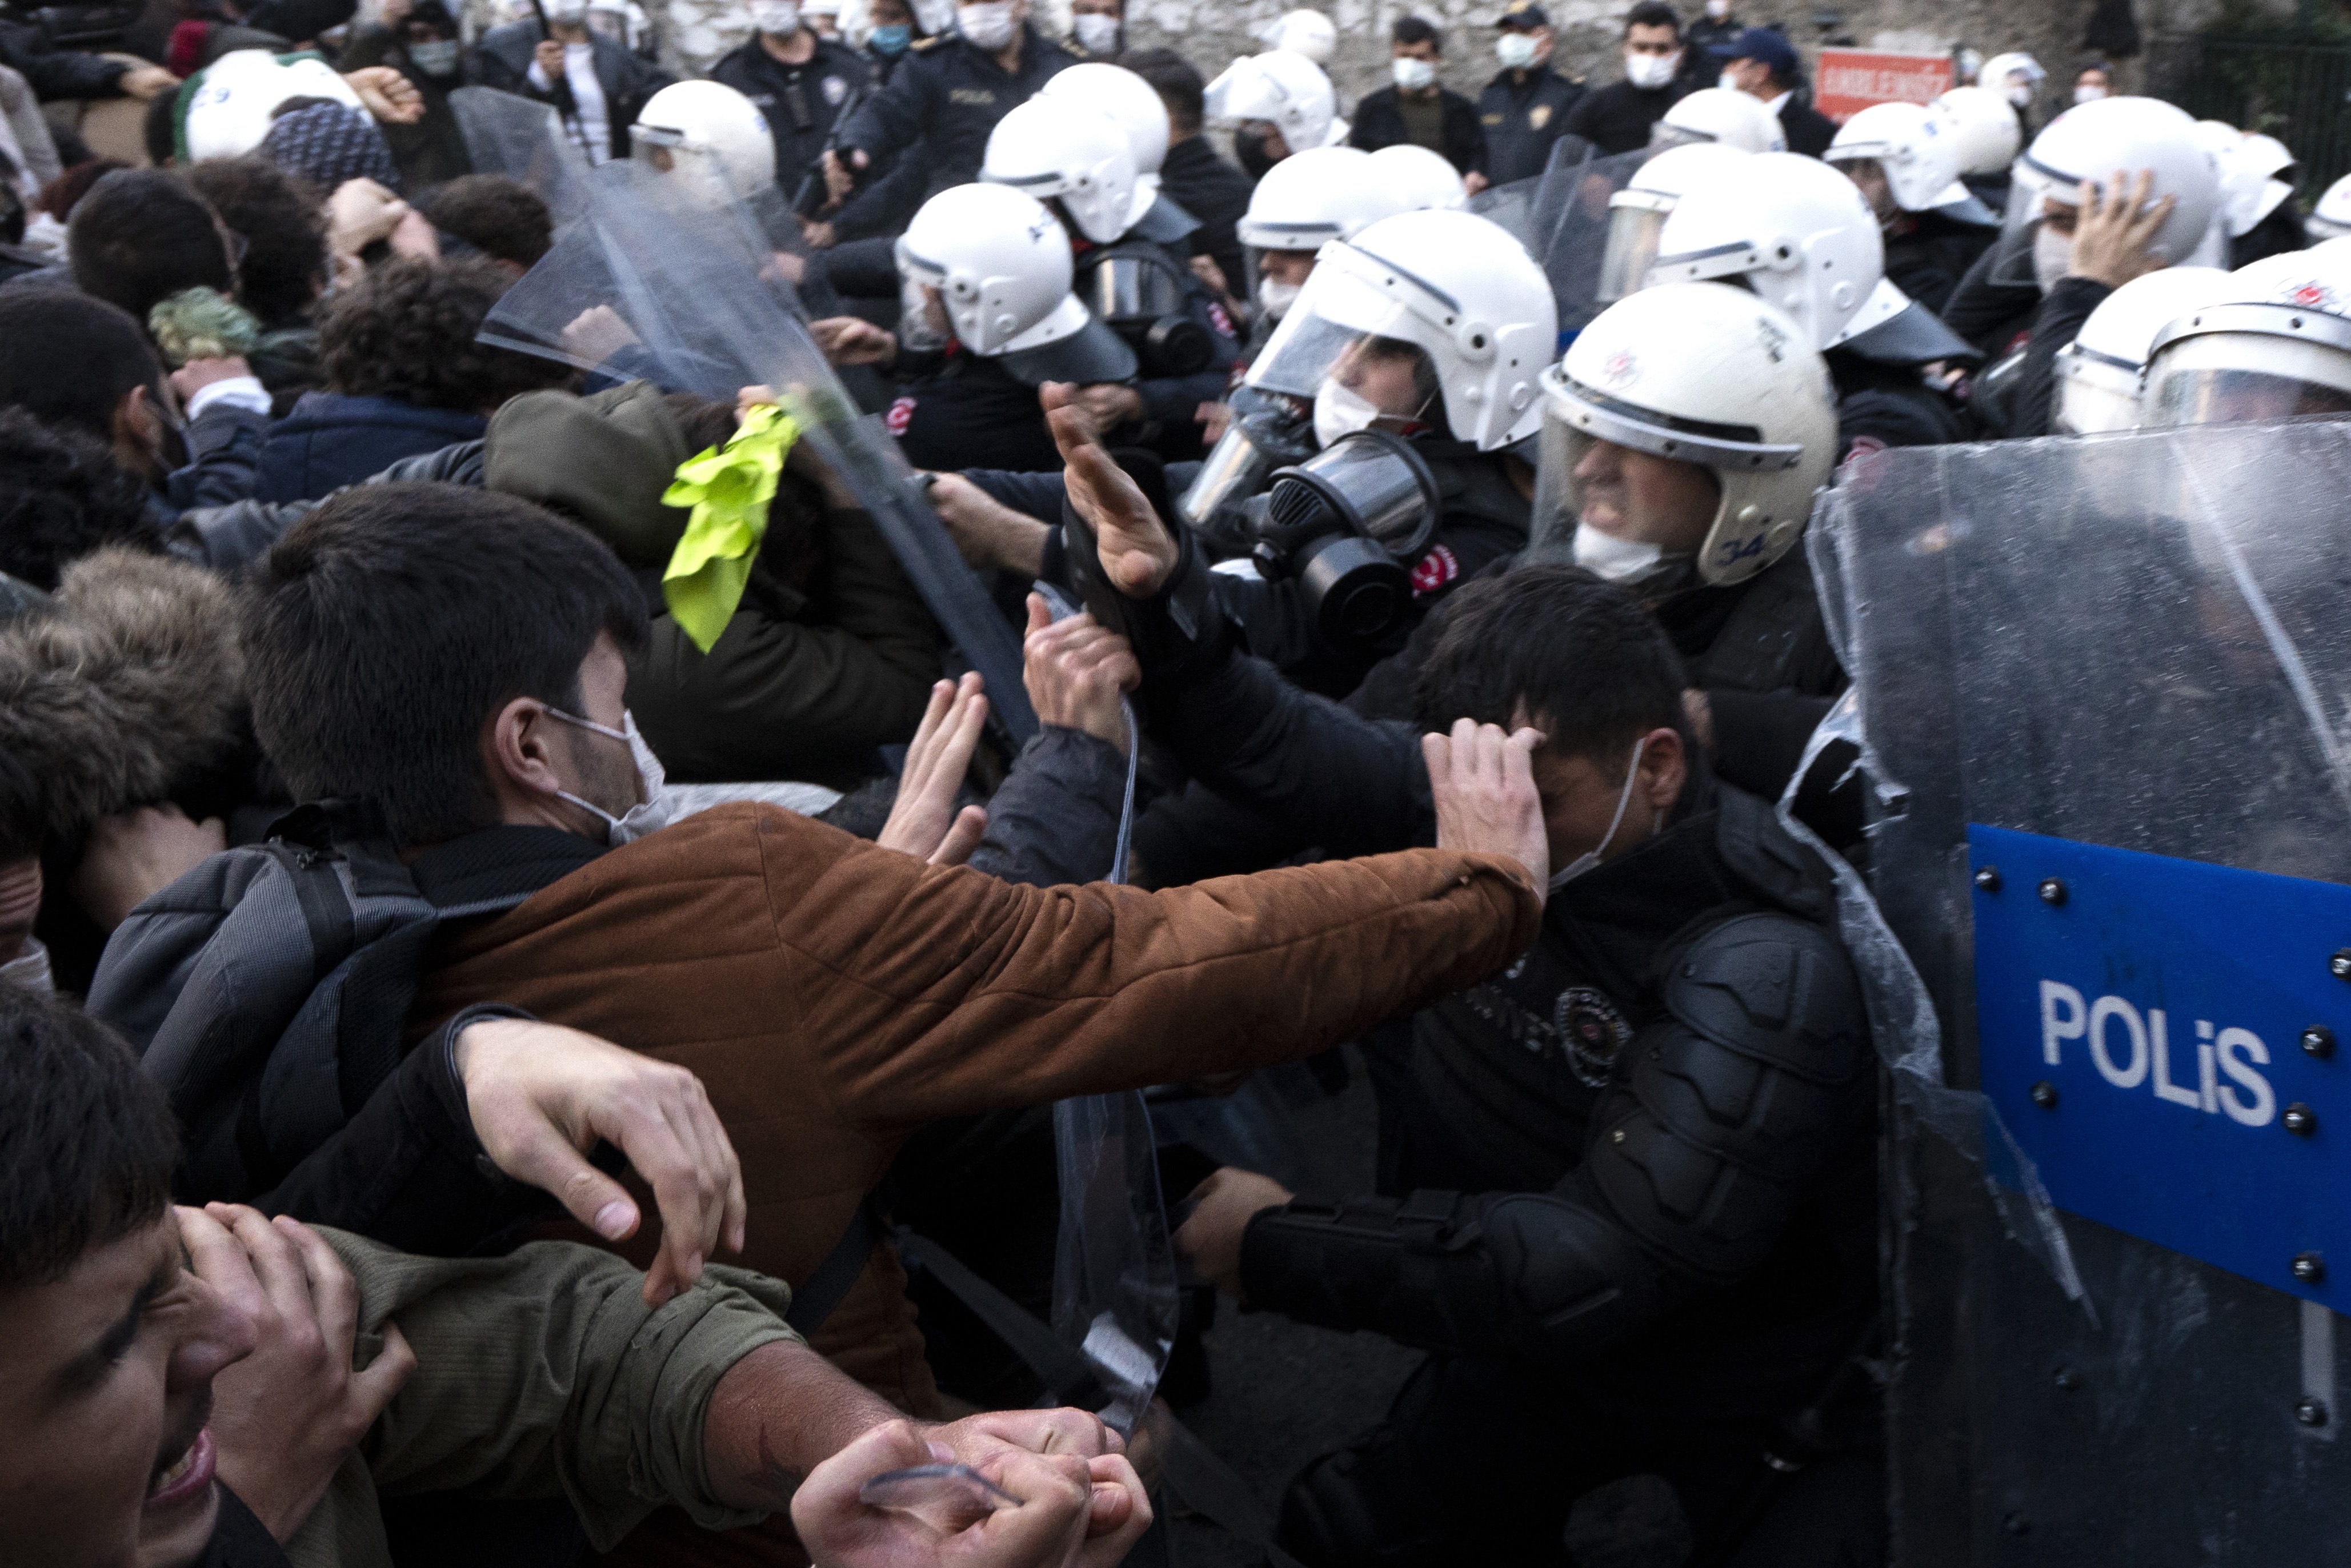 Protestas contra el Gobierno de Turquía en la Universidad Bogazici de Estambul.
JASON DEAN / ZUMA PRESS / CONTACTOPHOTO
